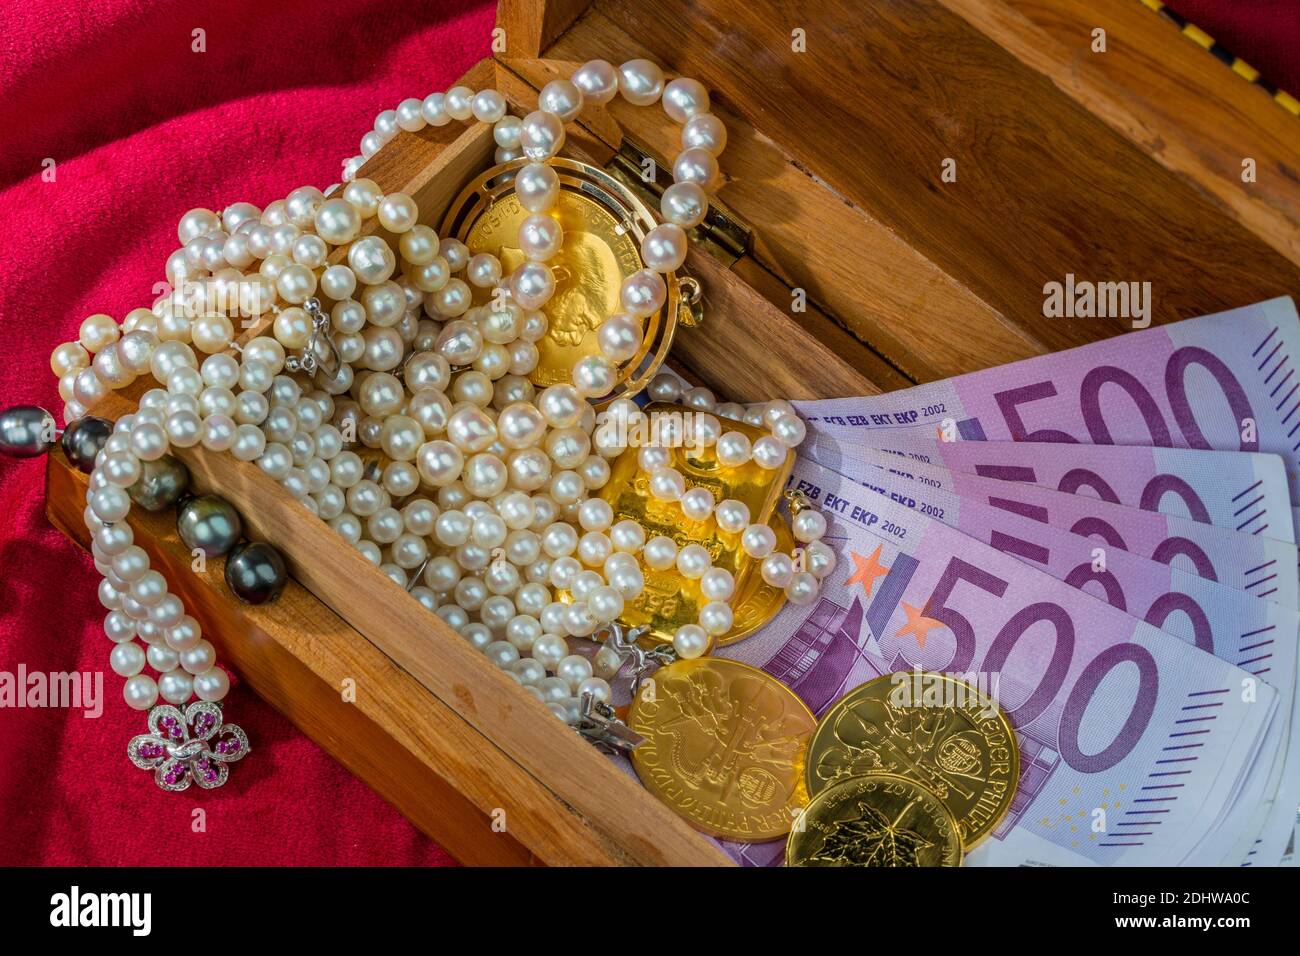 Gold in Münzen und Barren mit Schmuck auf rotem Samt. Symbolfoto für Reichtum, Luxus, Reichensteuer, 500 Euro Scheine, Stock Photo